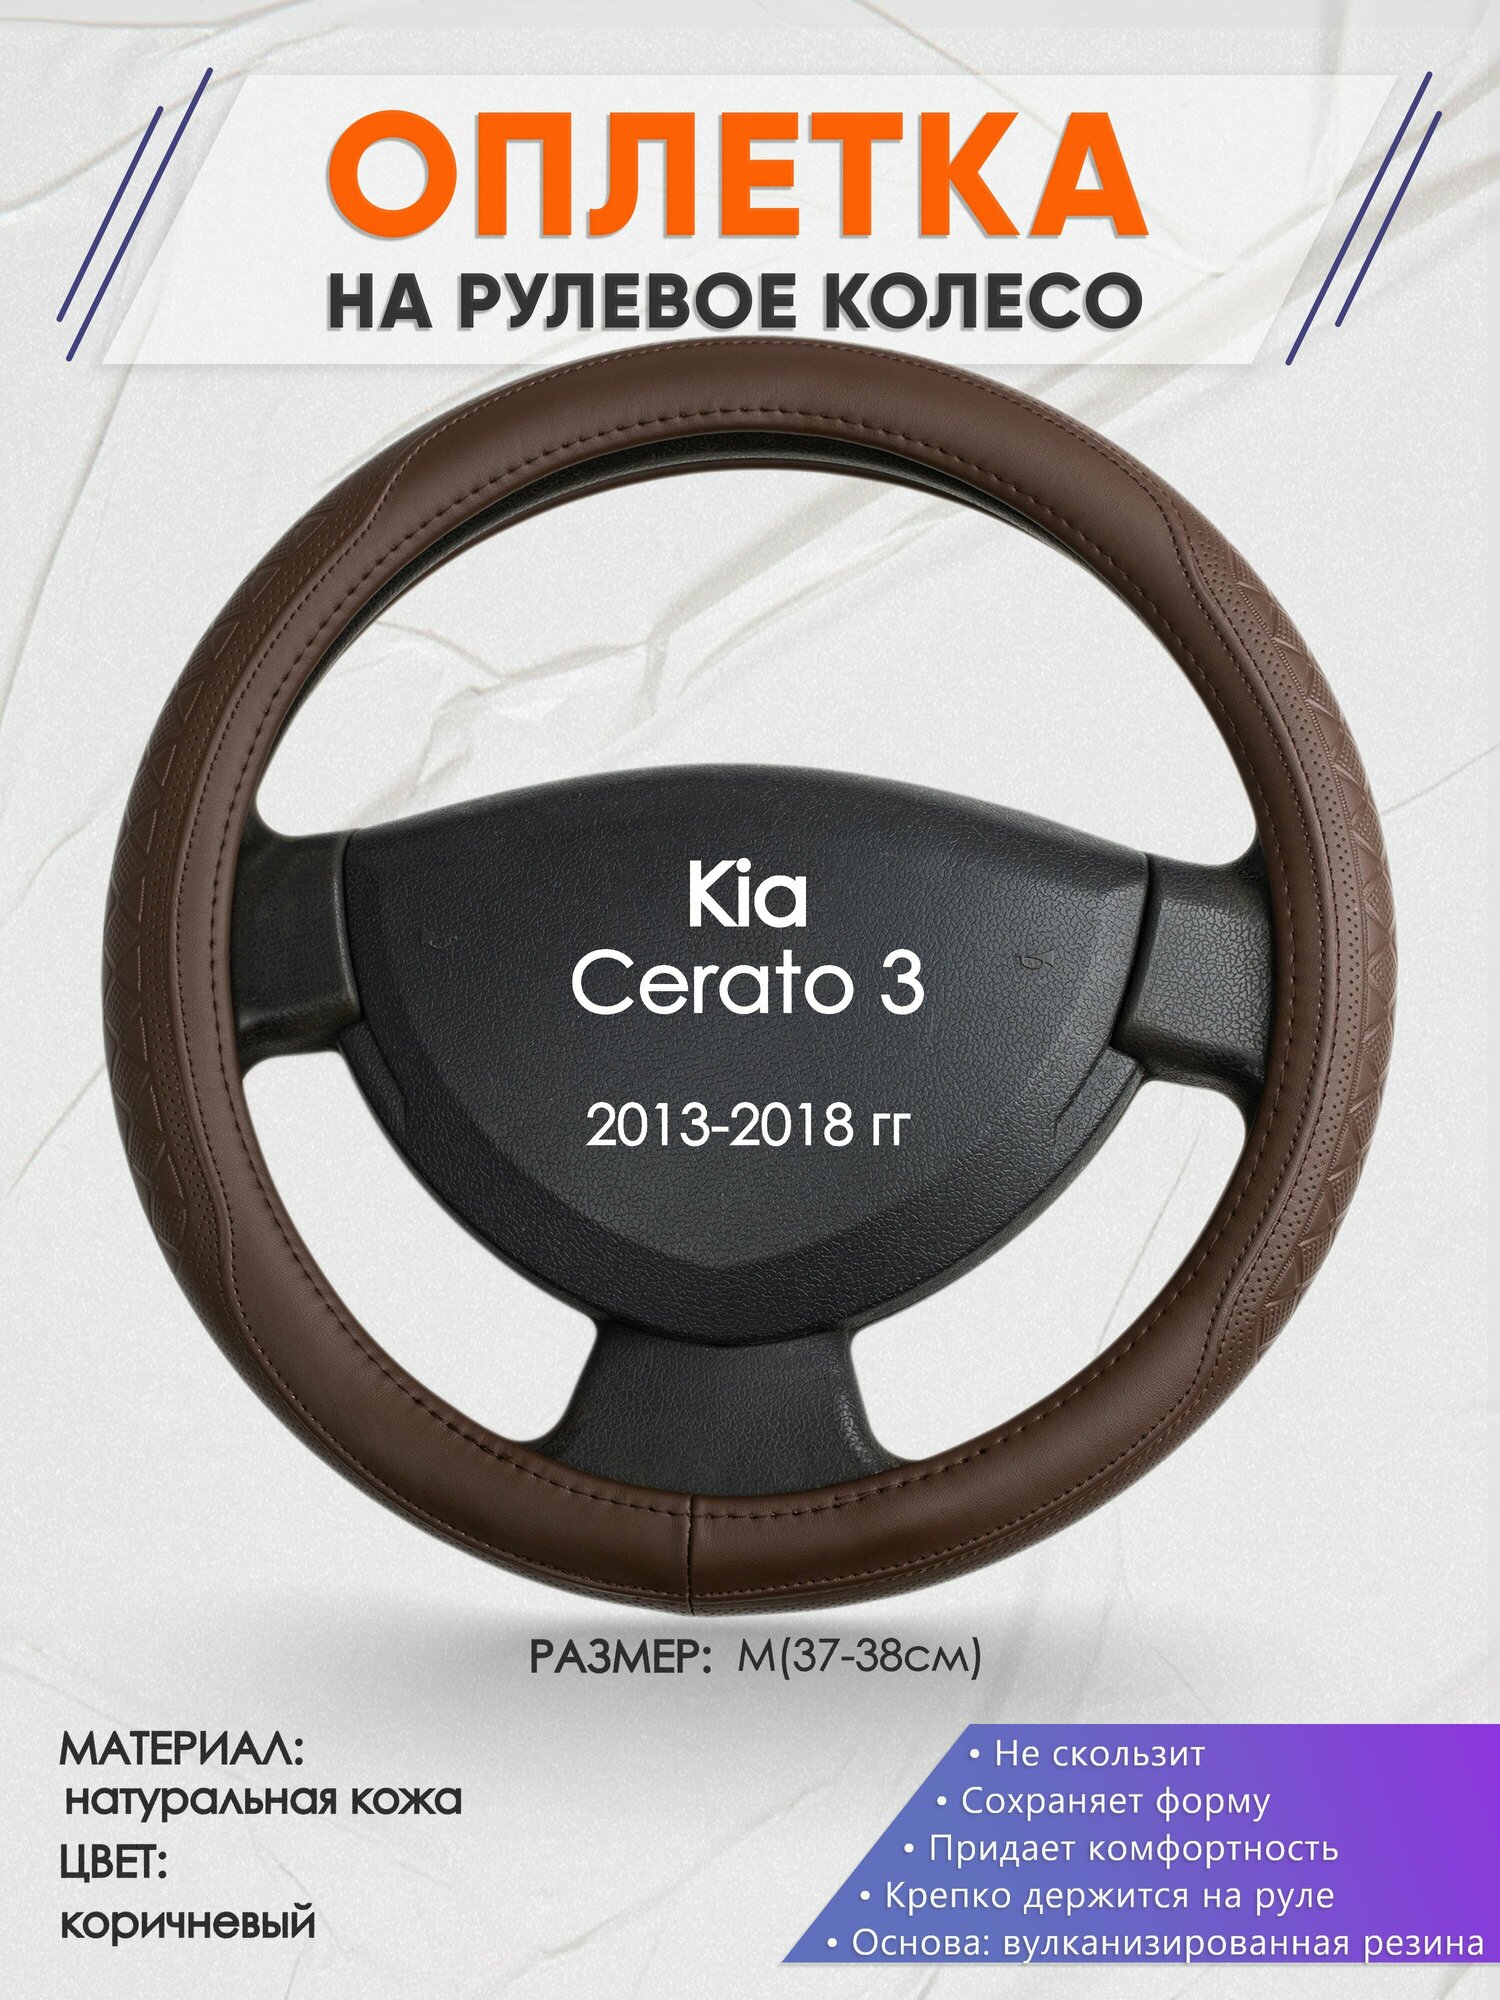 Оплетка на руль для Kia Cerato 3(Киа Церато 3) 2013-2018, M(37-38см), Натуральная кожа 88